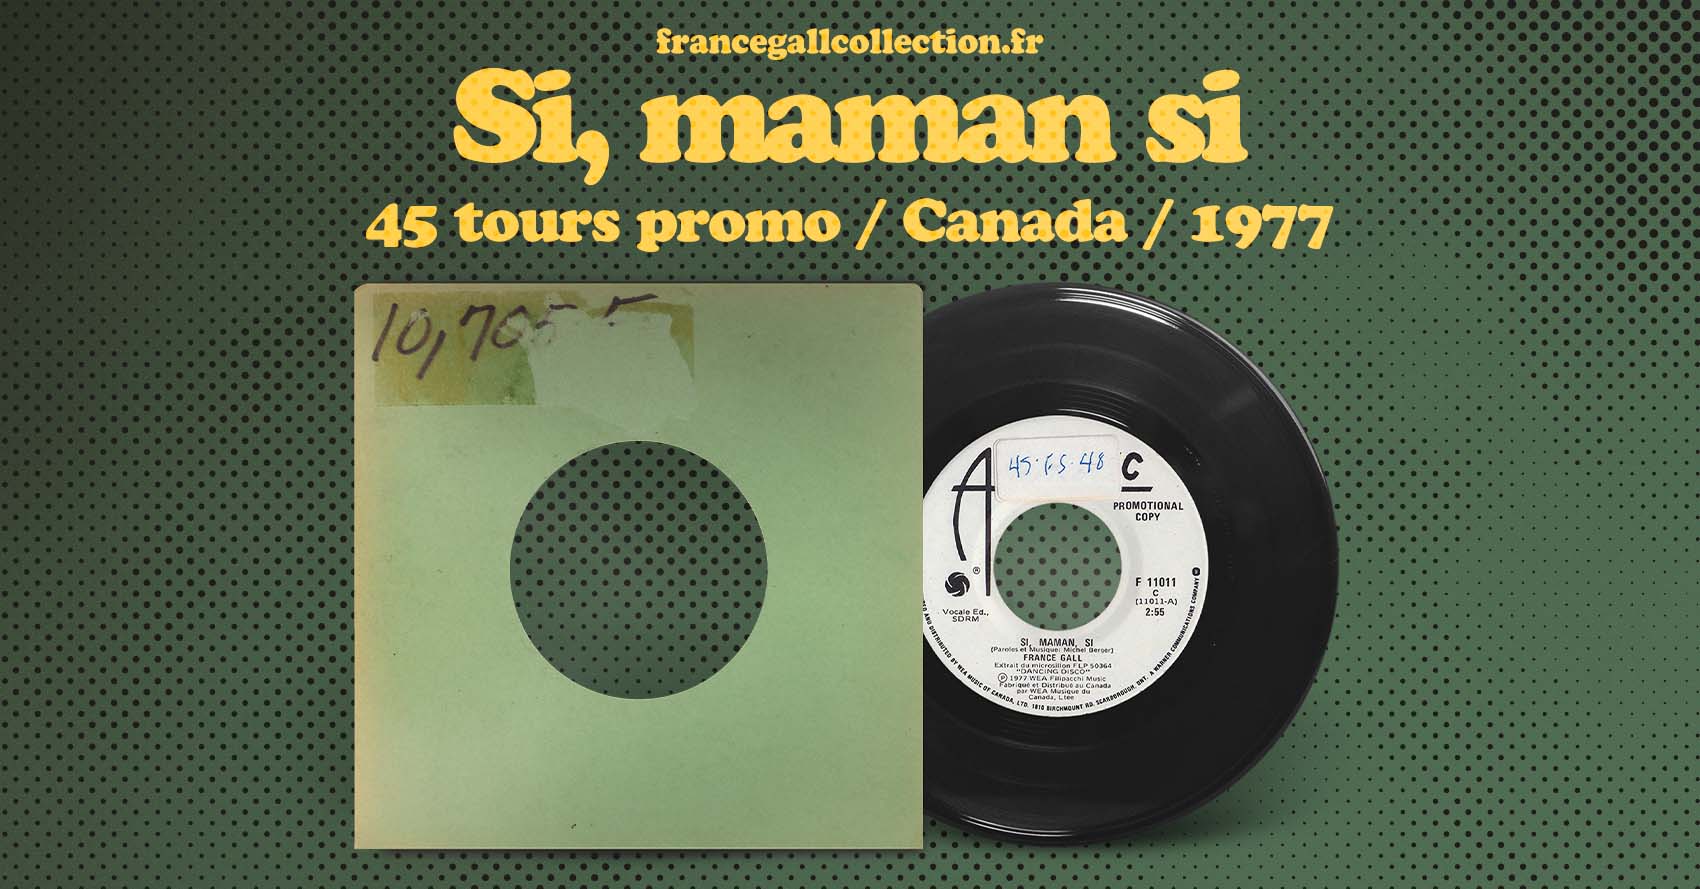 Ce 45 tours promotionnel édité au Canada en octobre 1977 contient les titres Si, maman si et Chanson de Maggie, tous second extraits du deuxième album de France Gall, Dancing Disco, paru le 27 avril 1977.